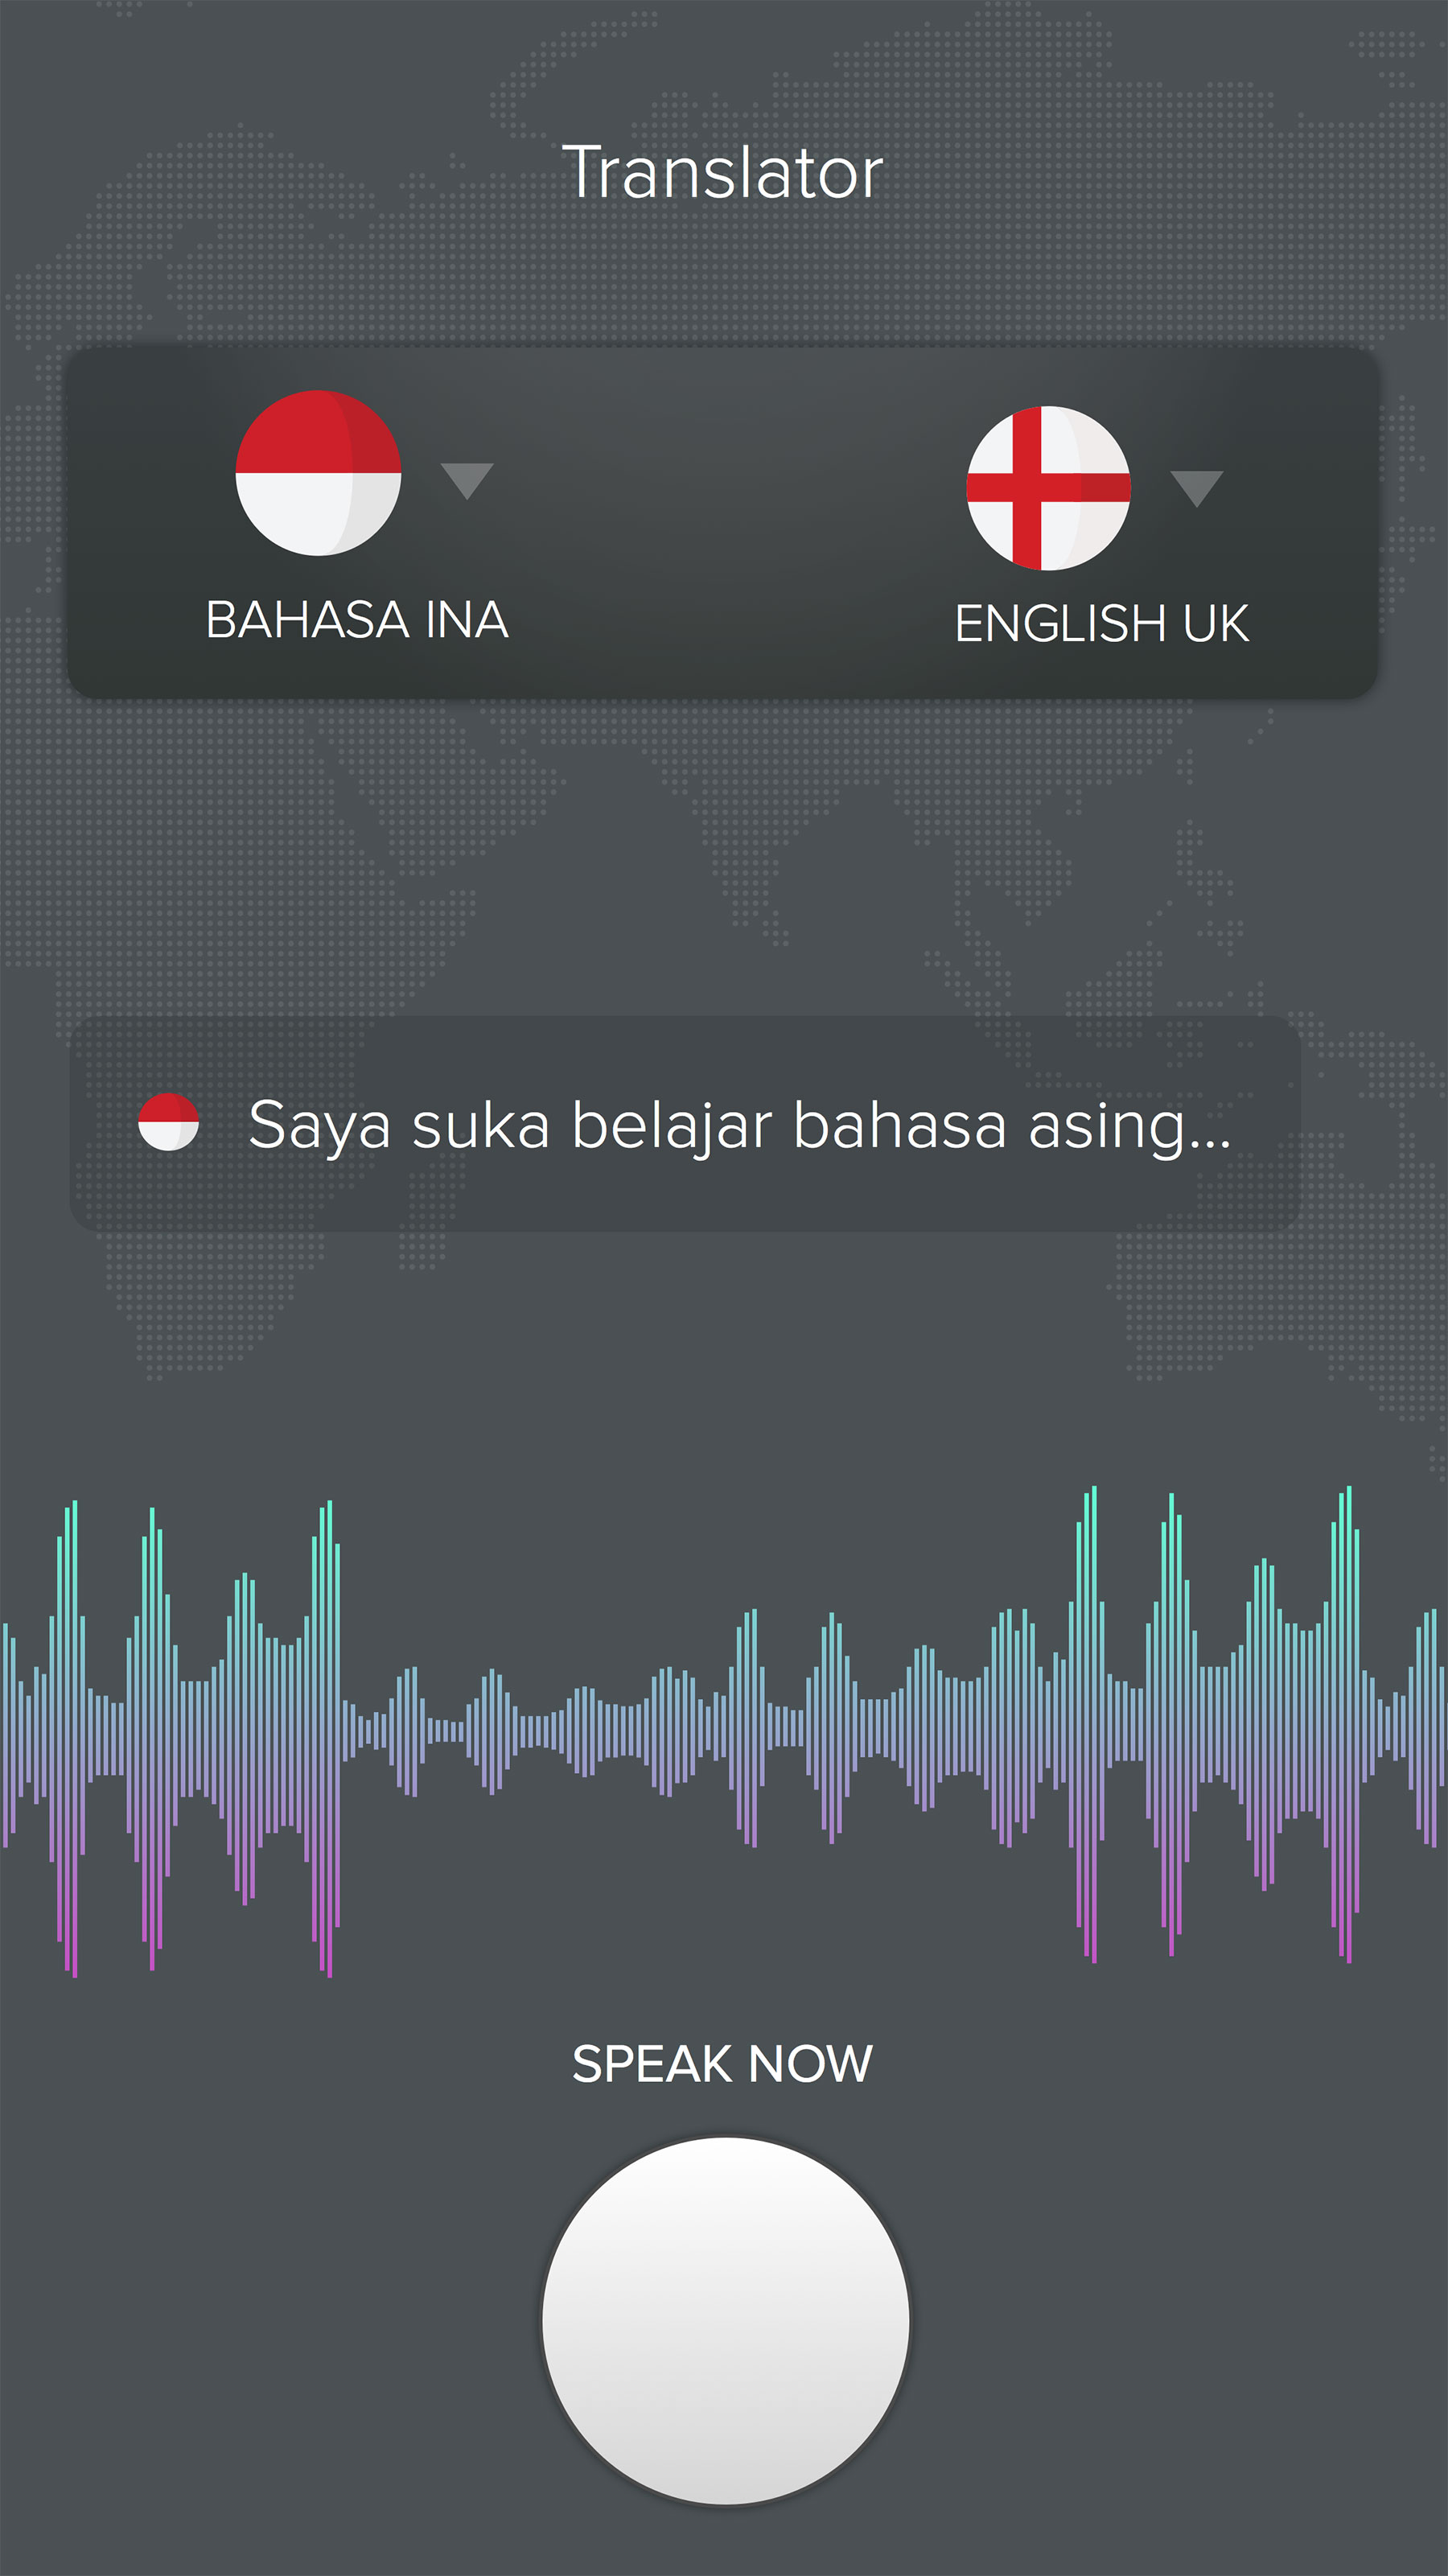 Translator App